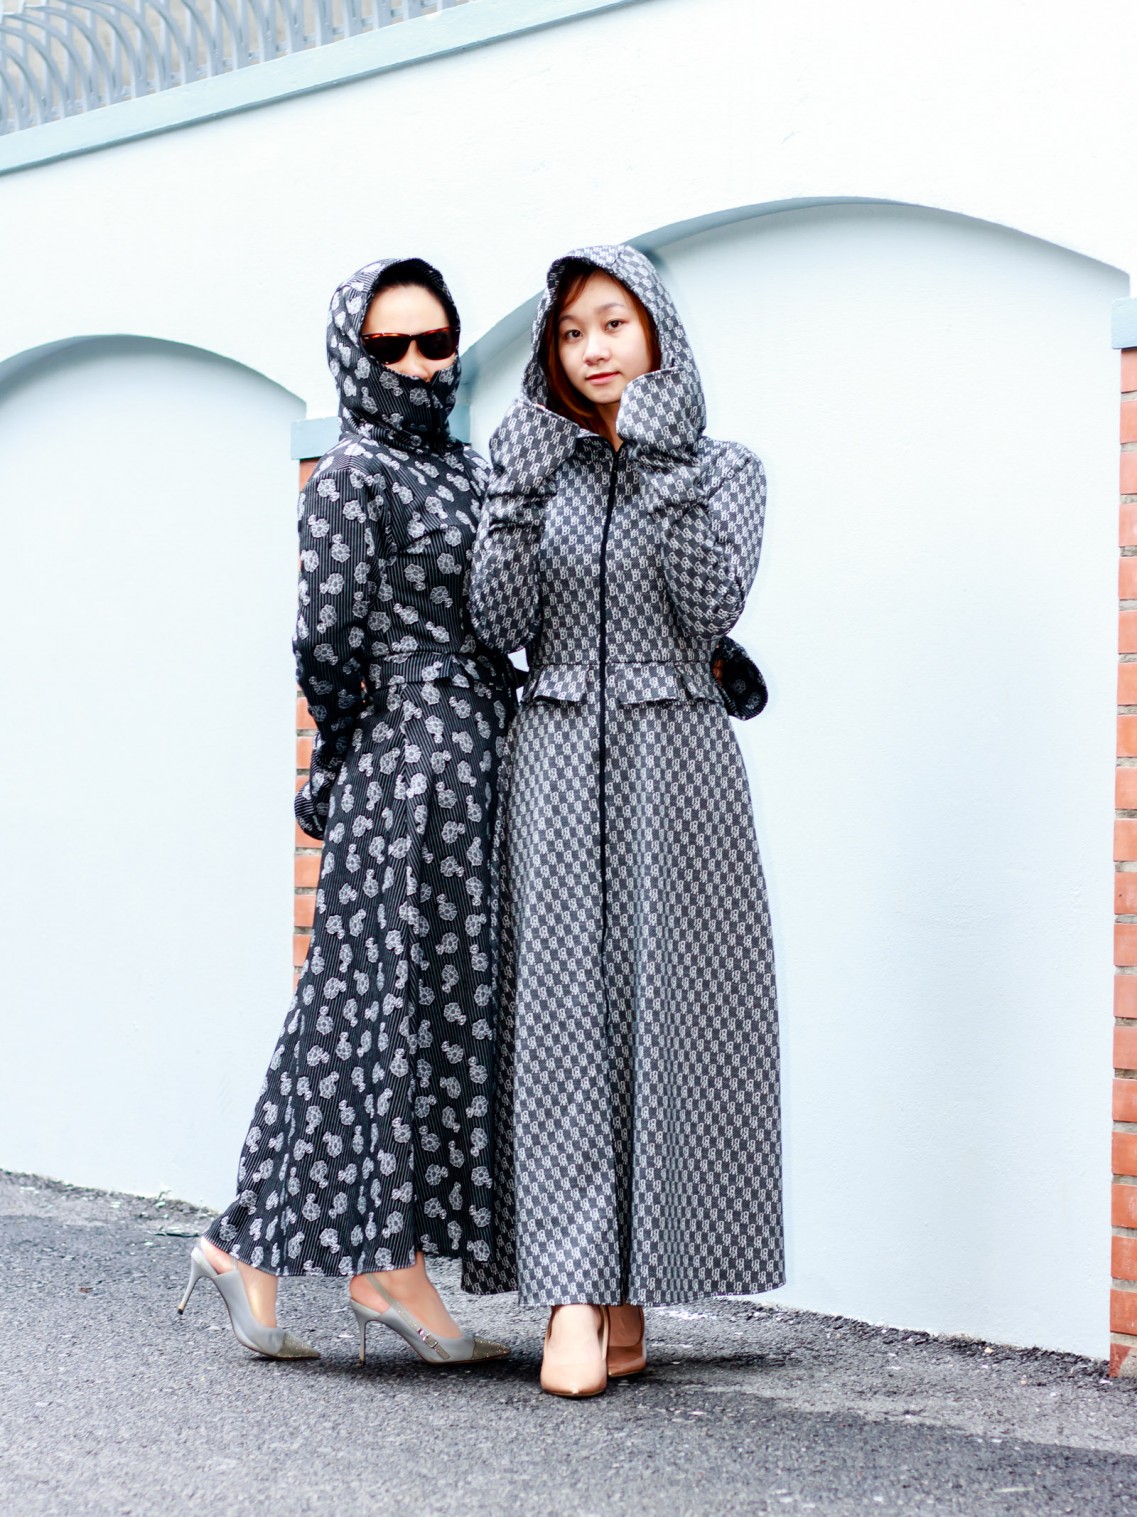 Áo chống nắng vải lanh 2019 | Tổng kho thời trang Nhật Bản